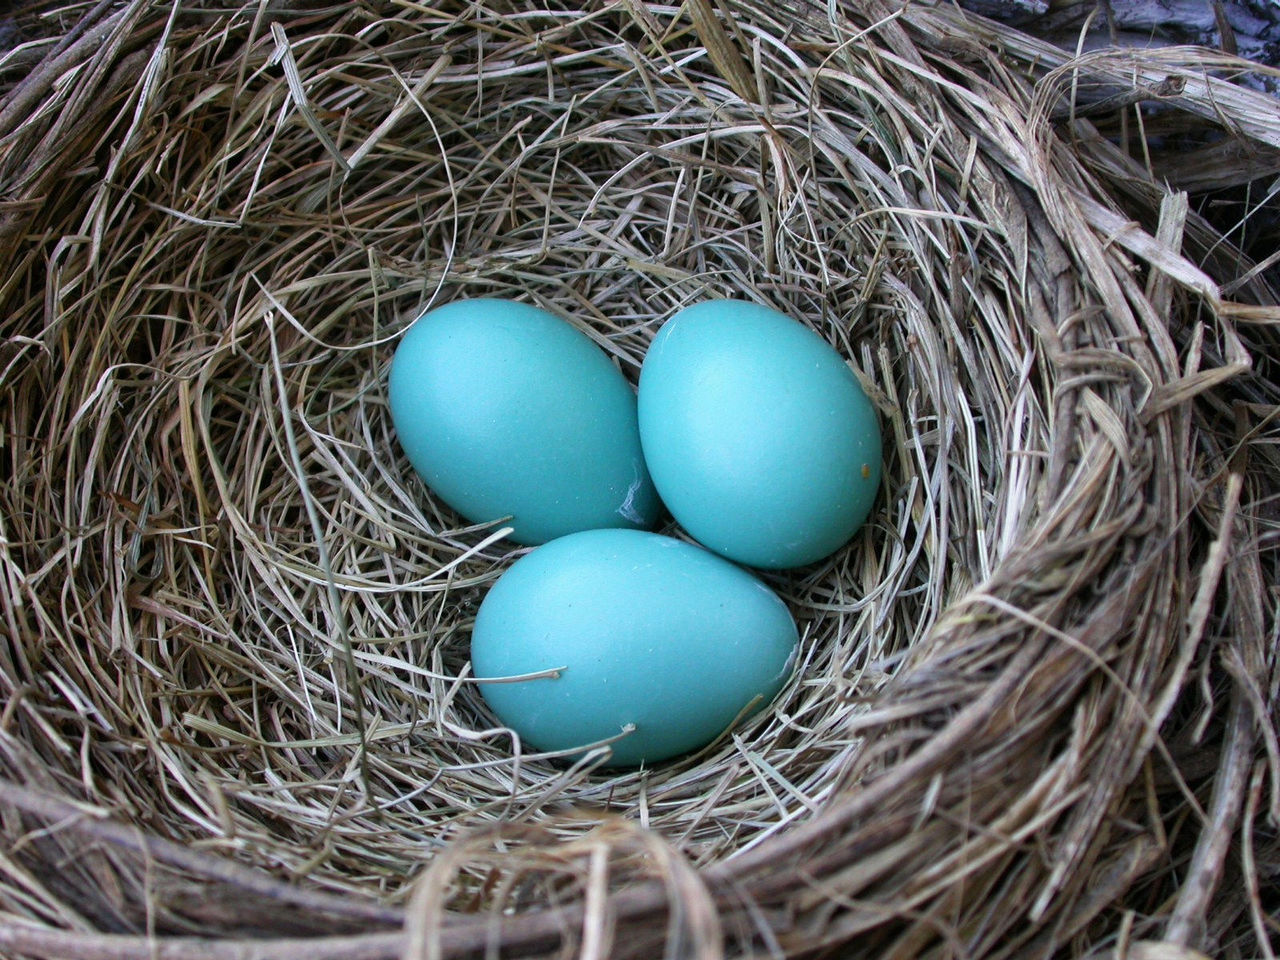 鹦鹉受精蛋可人工孵化受精卵虎皮受精蛋鸟玄凤受精蛋包邮可孵化蛋-淘宝网